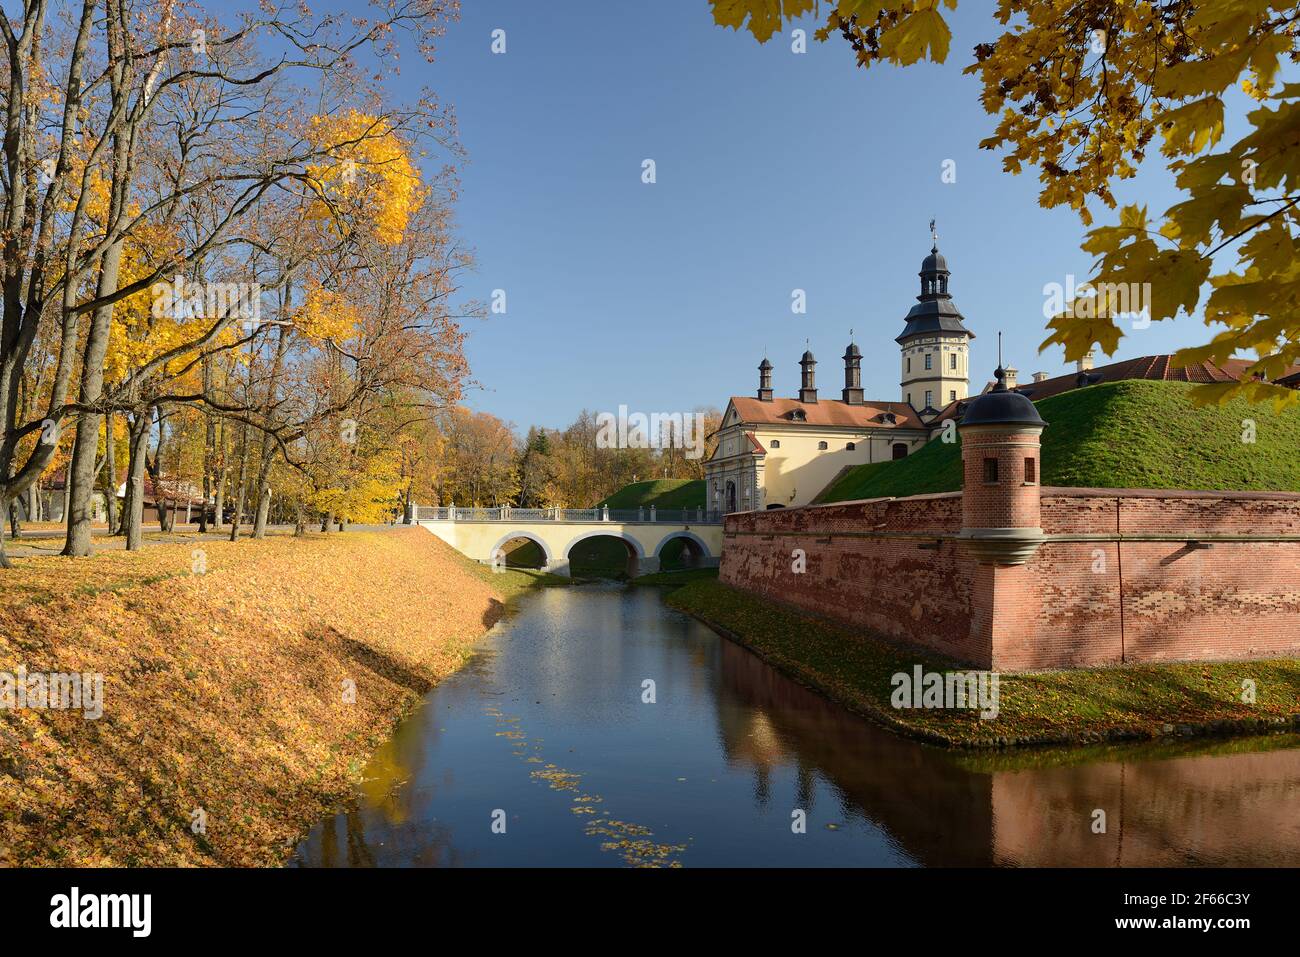 Château de Nesvizh, Bélarus. Le palais et le château se trouvent à Nesvizh, dans la région de Minsk en Biélorussie. Il est inscrit au patrimoine mondial de l'UNESCO. Banque D'Images